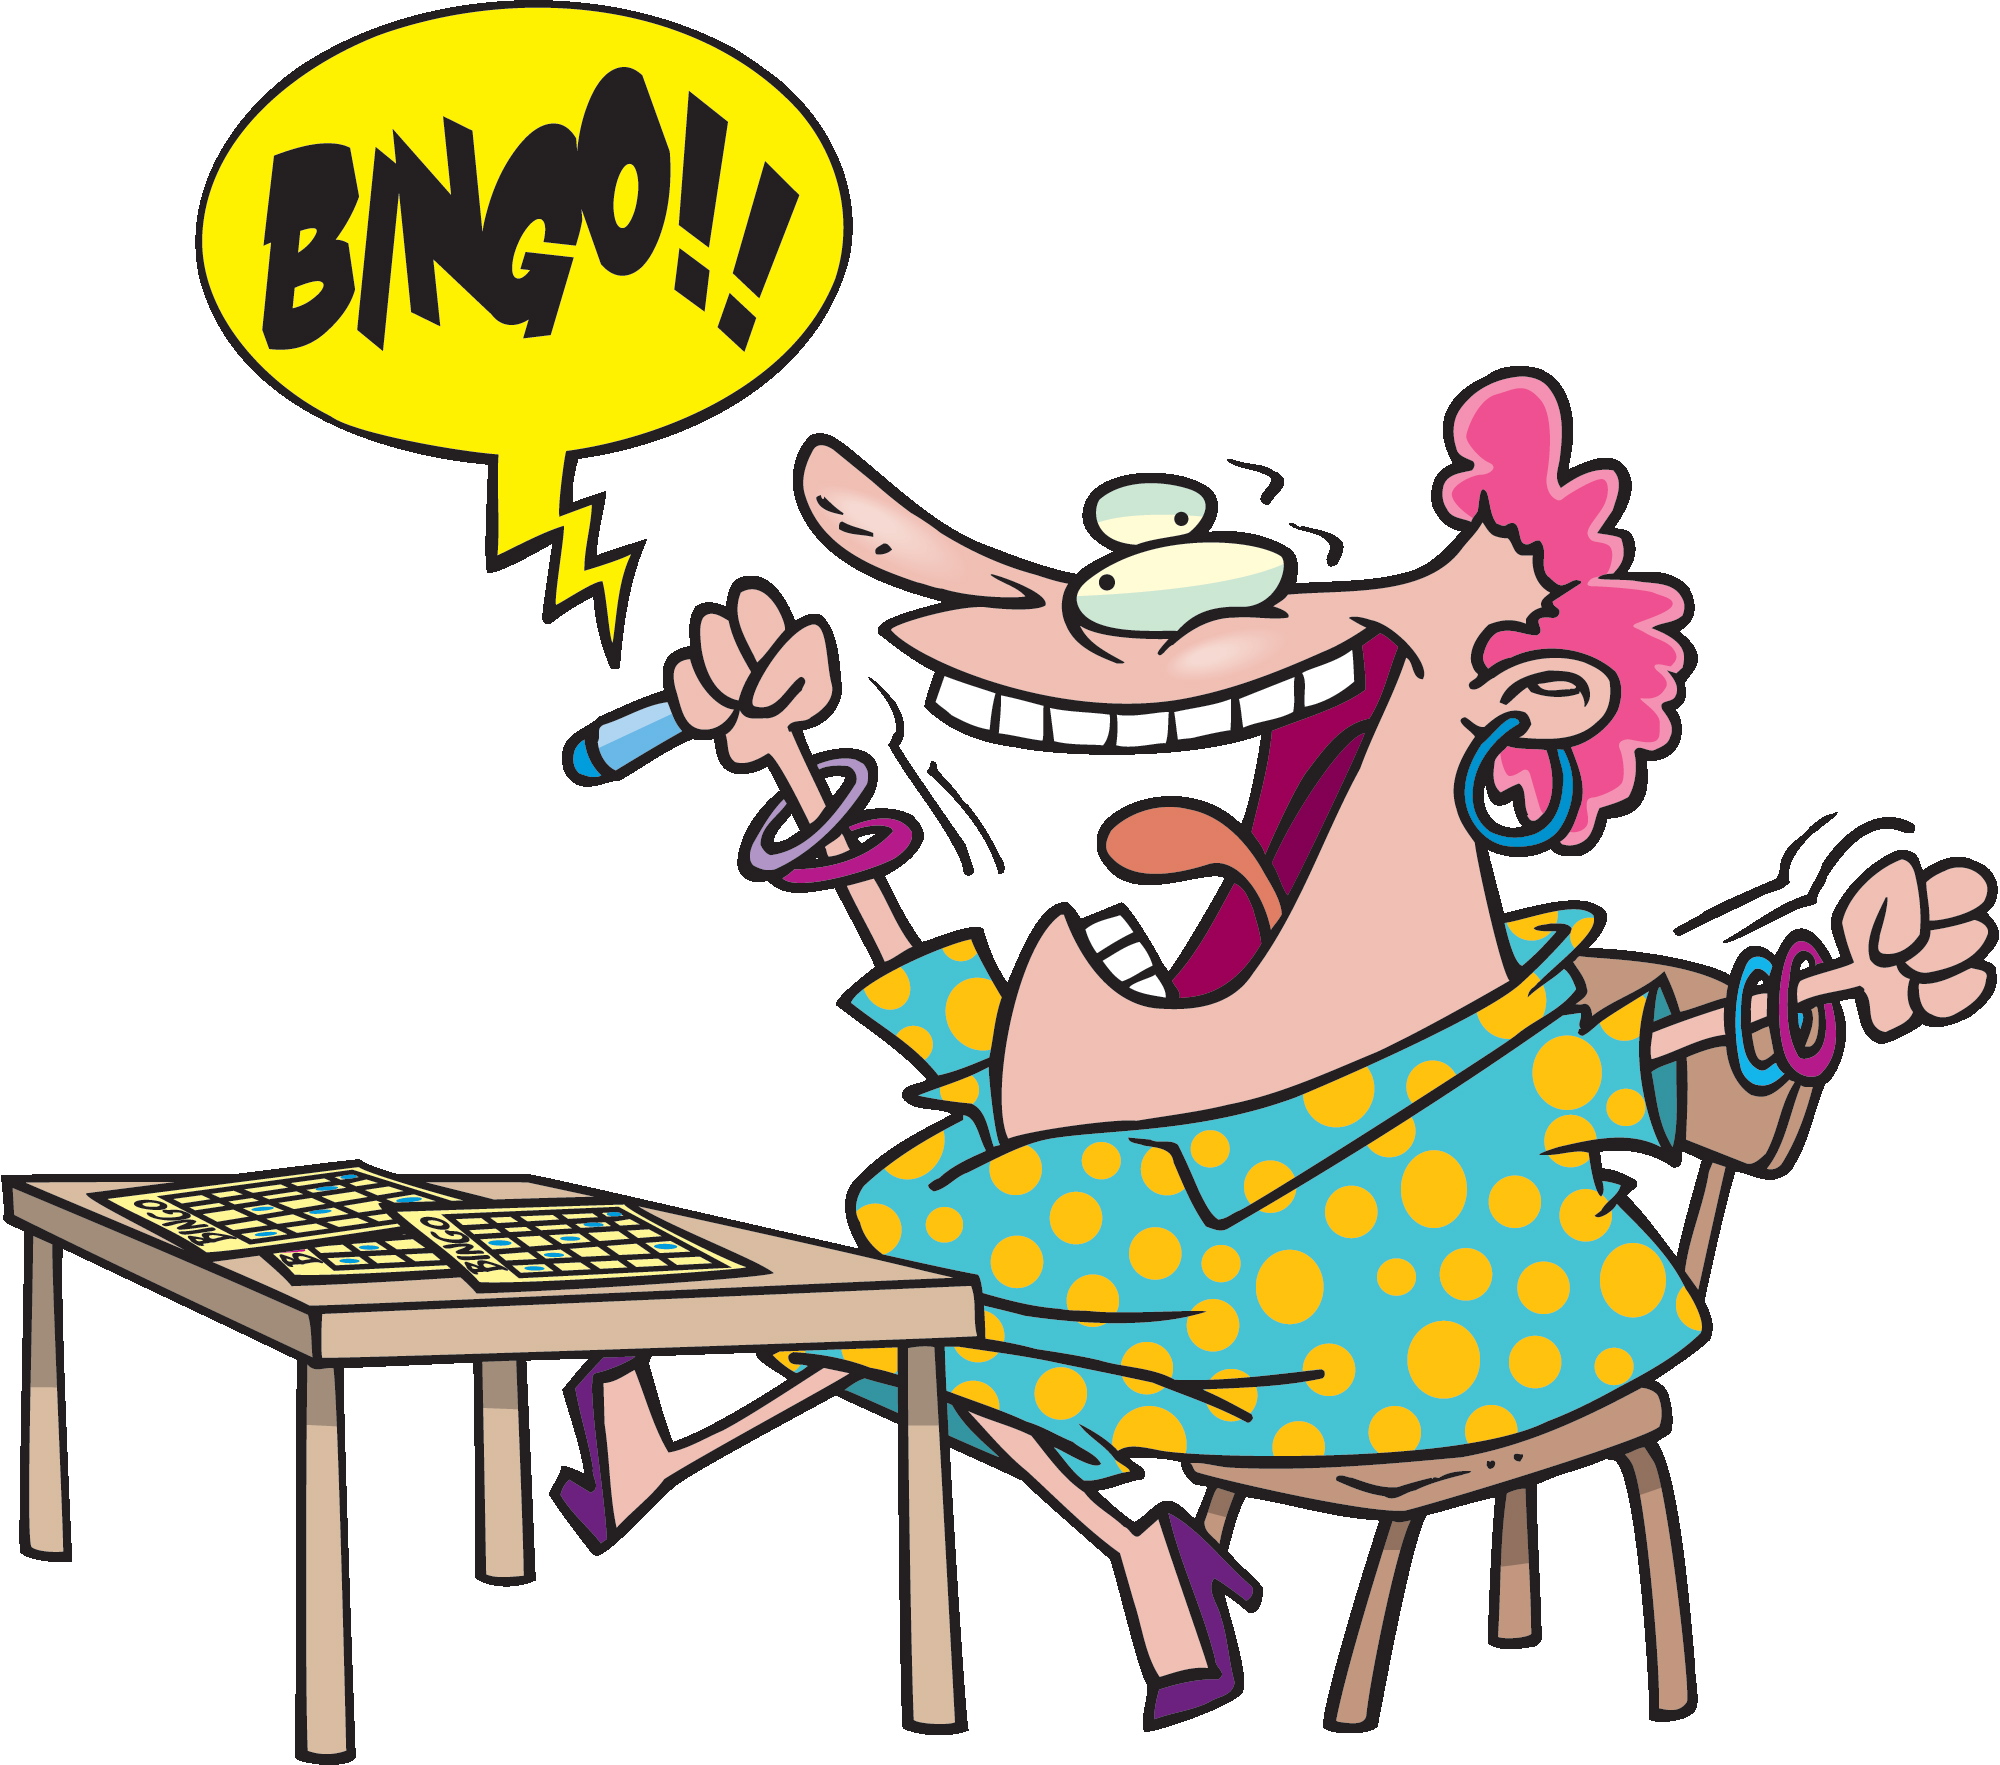 bingo winner clipart - photo #2